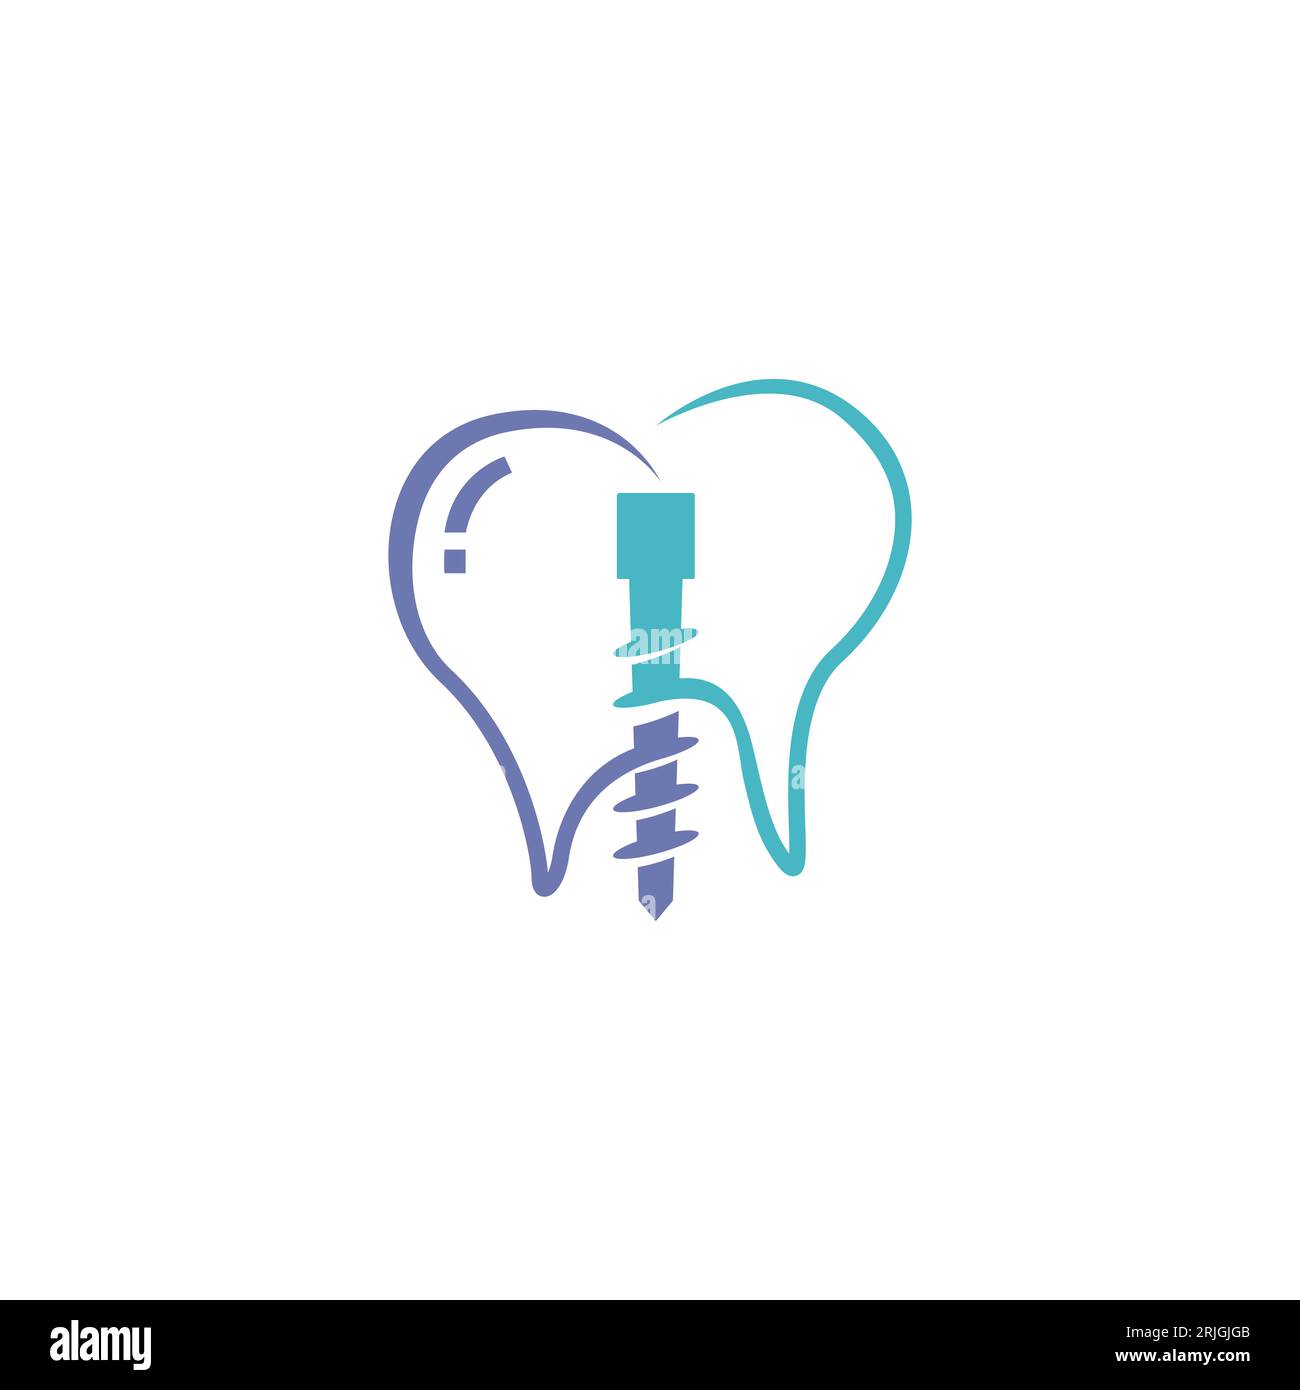 Vecteur de concept de conception de logo d'implant dentaire, illustration stock de modèle de logo de soins dentaires. Vecteur implant dentaire logo Vector conceptions concept clin dentaire Illustration de Vecteur